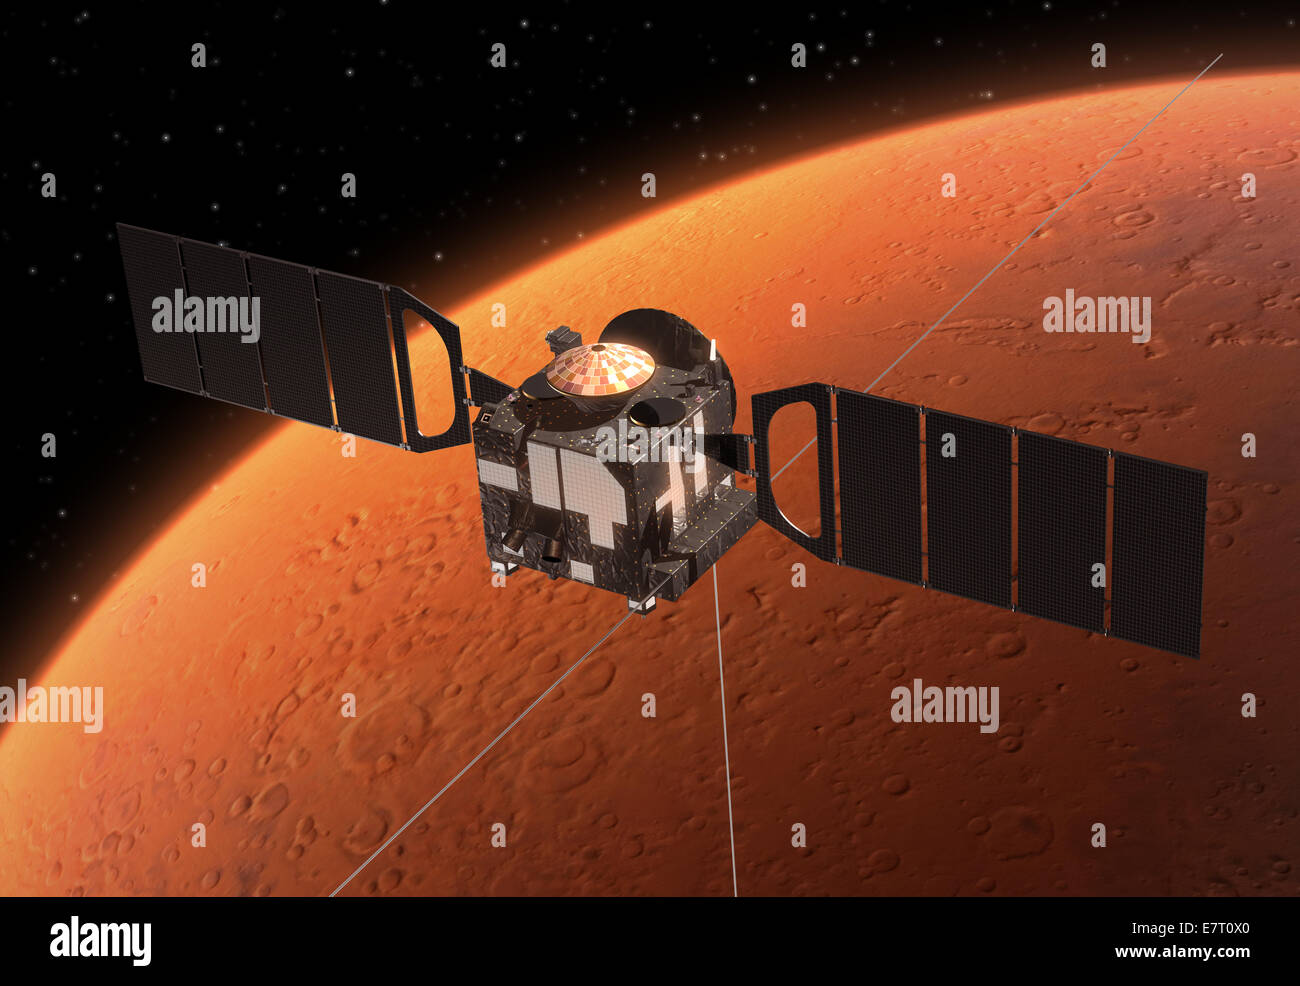 Veicolo spaziale Mars Express in orbita attorno a Marte Foto Stock